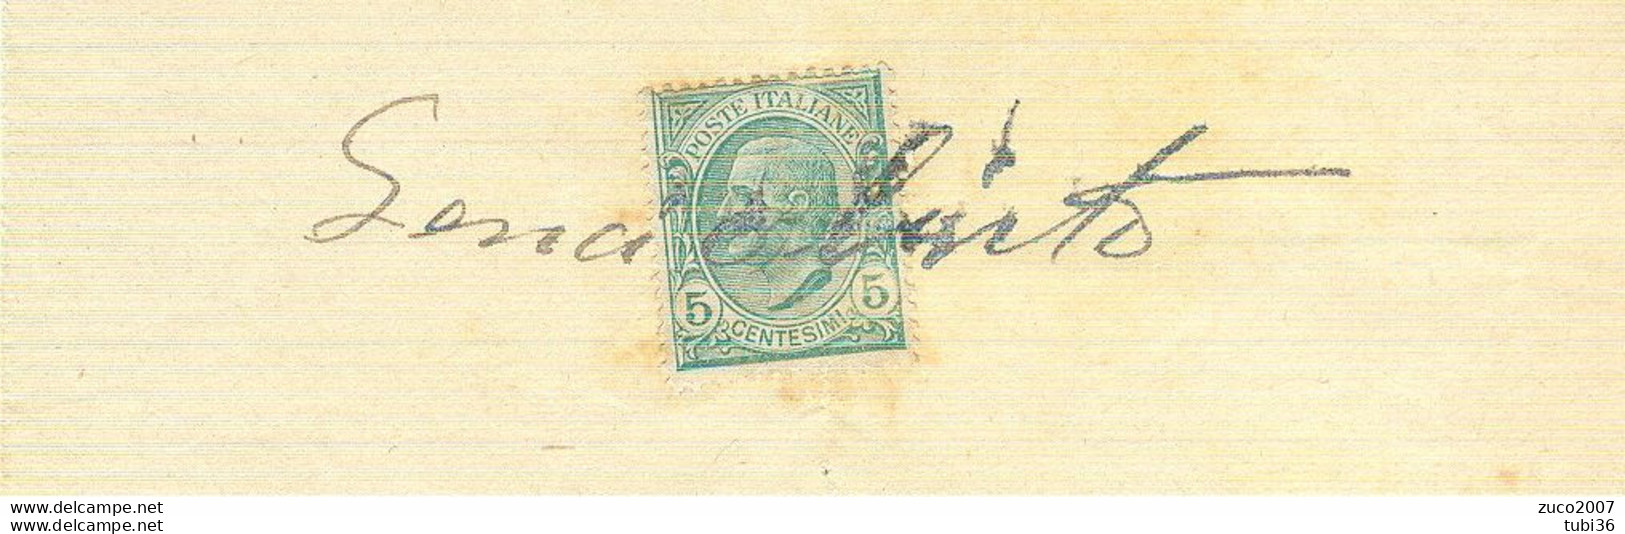 VITTORIO EMANUELE III Cent.5 (s81),SU RICEVUTA PRIVATA,anno 1914,USO MARCA DA BOLLO, - Fiscale Zegels